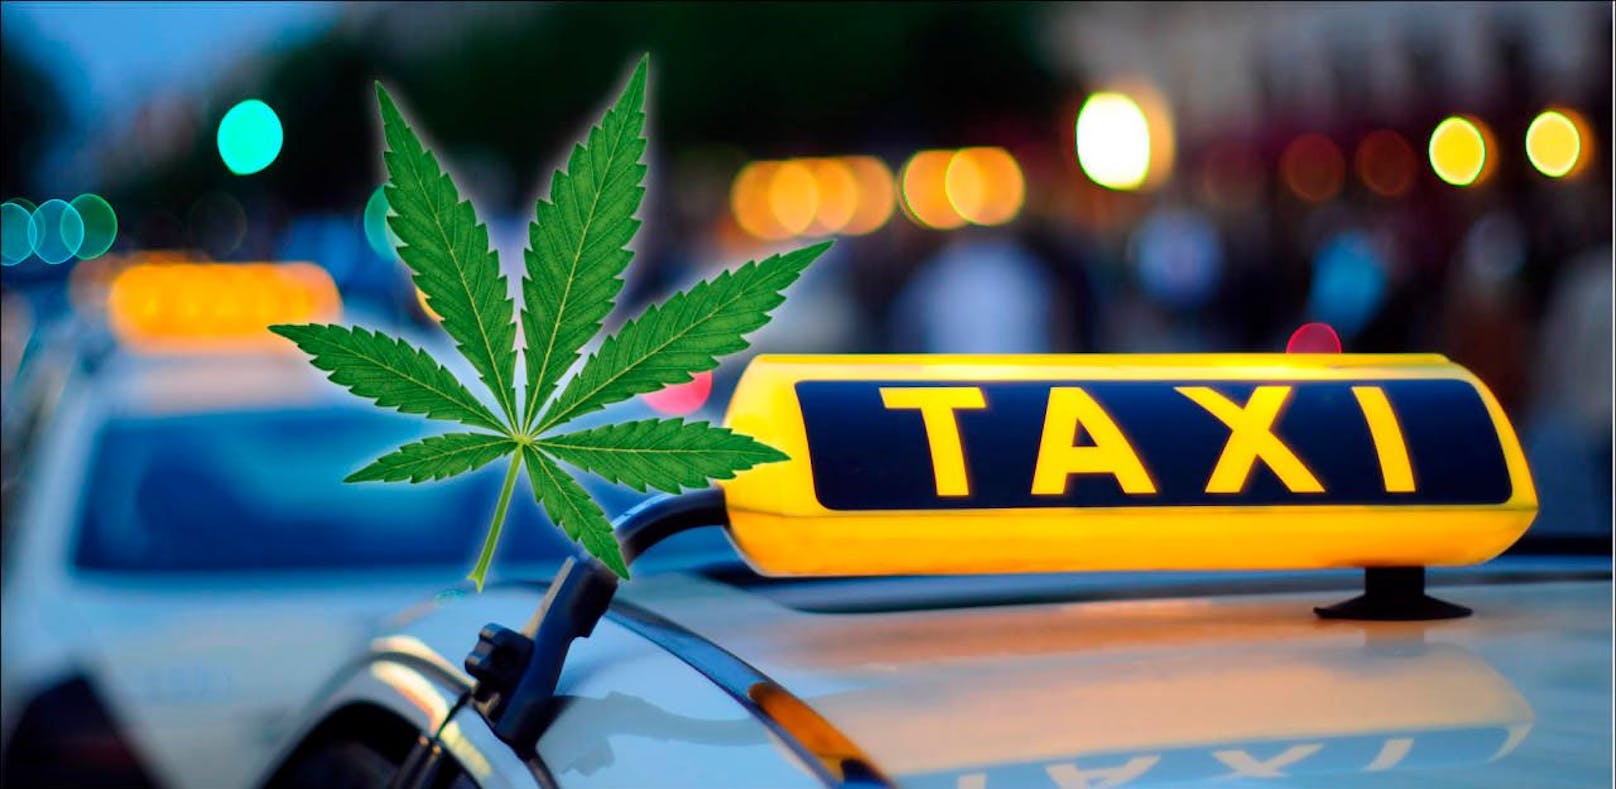 Der Beschuldigte soll neben Drogengeschäften auch noch ein illegales Taxiunternehmen geleitet haben.